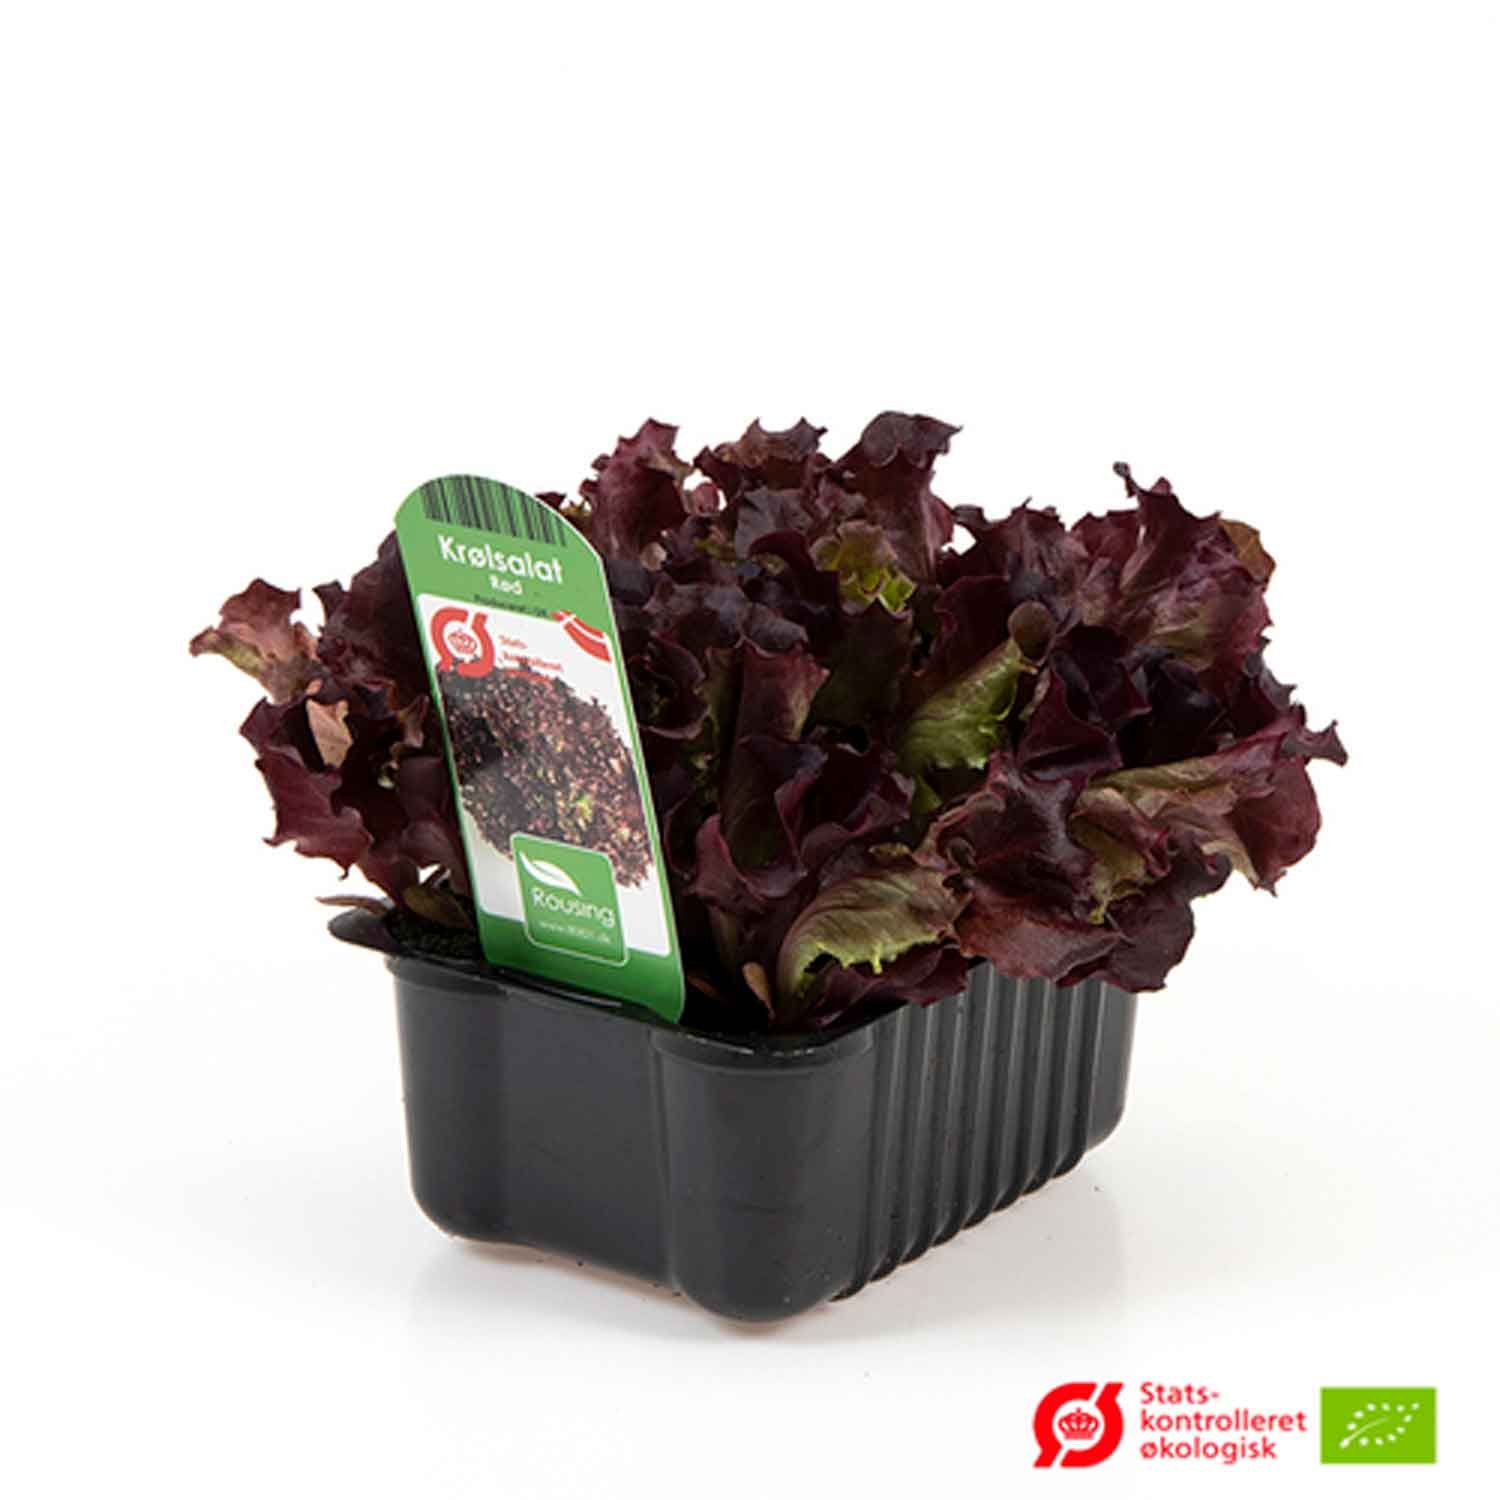 Salat - rød krølsalat i box